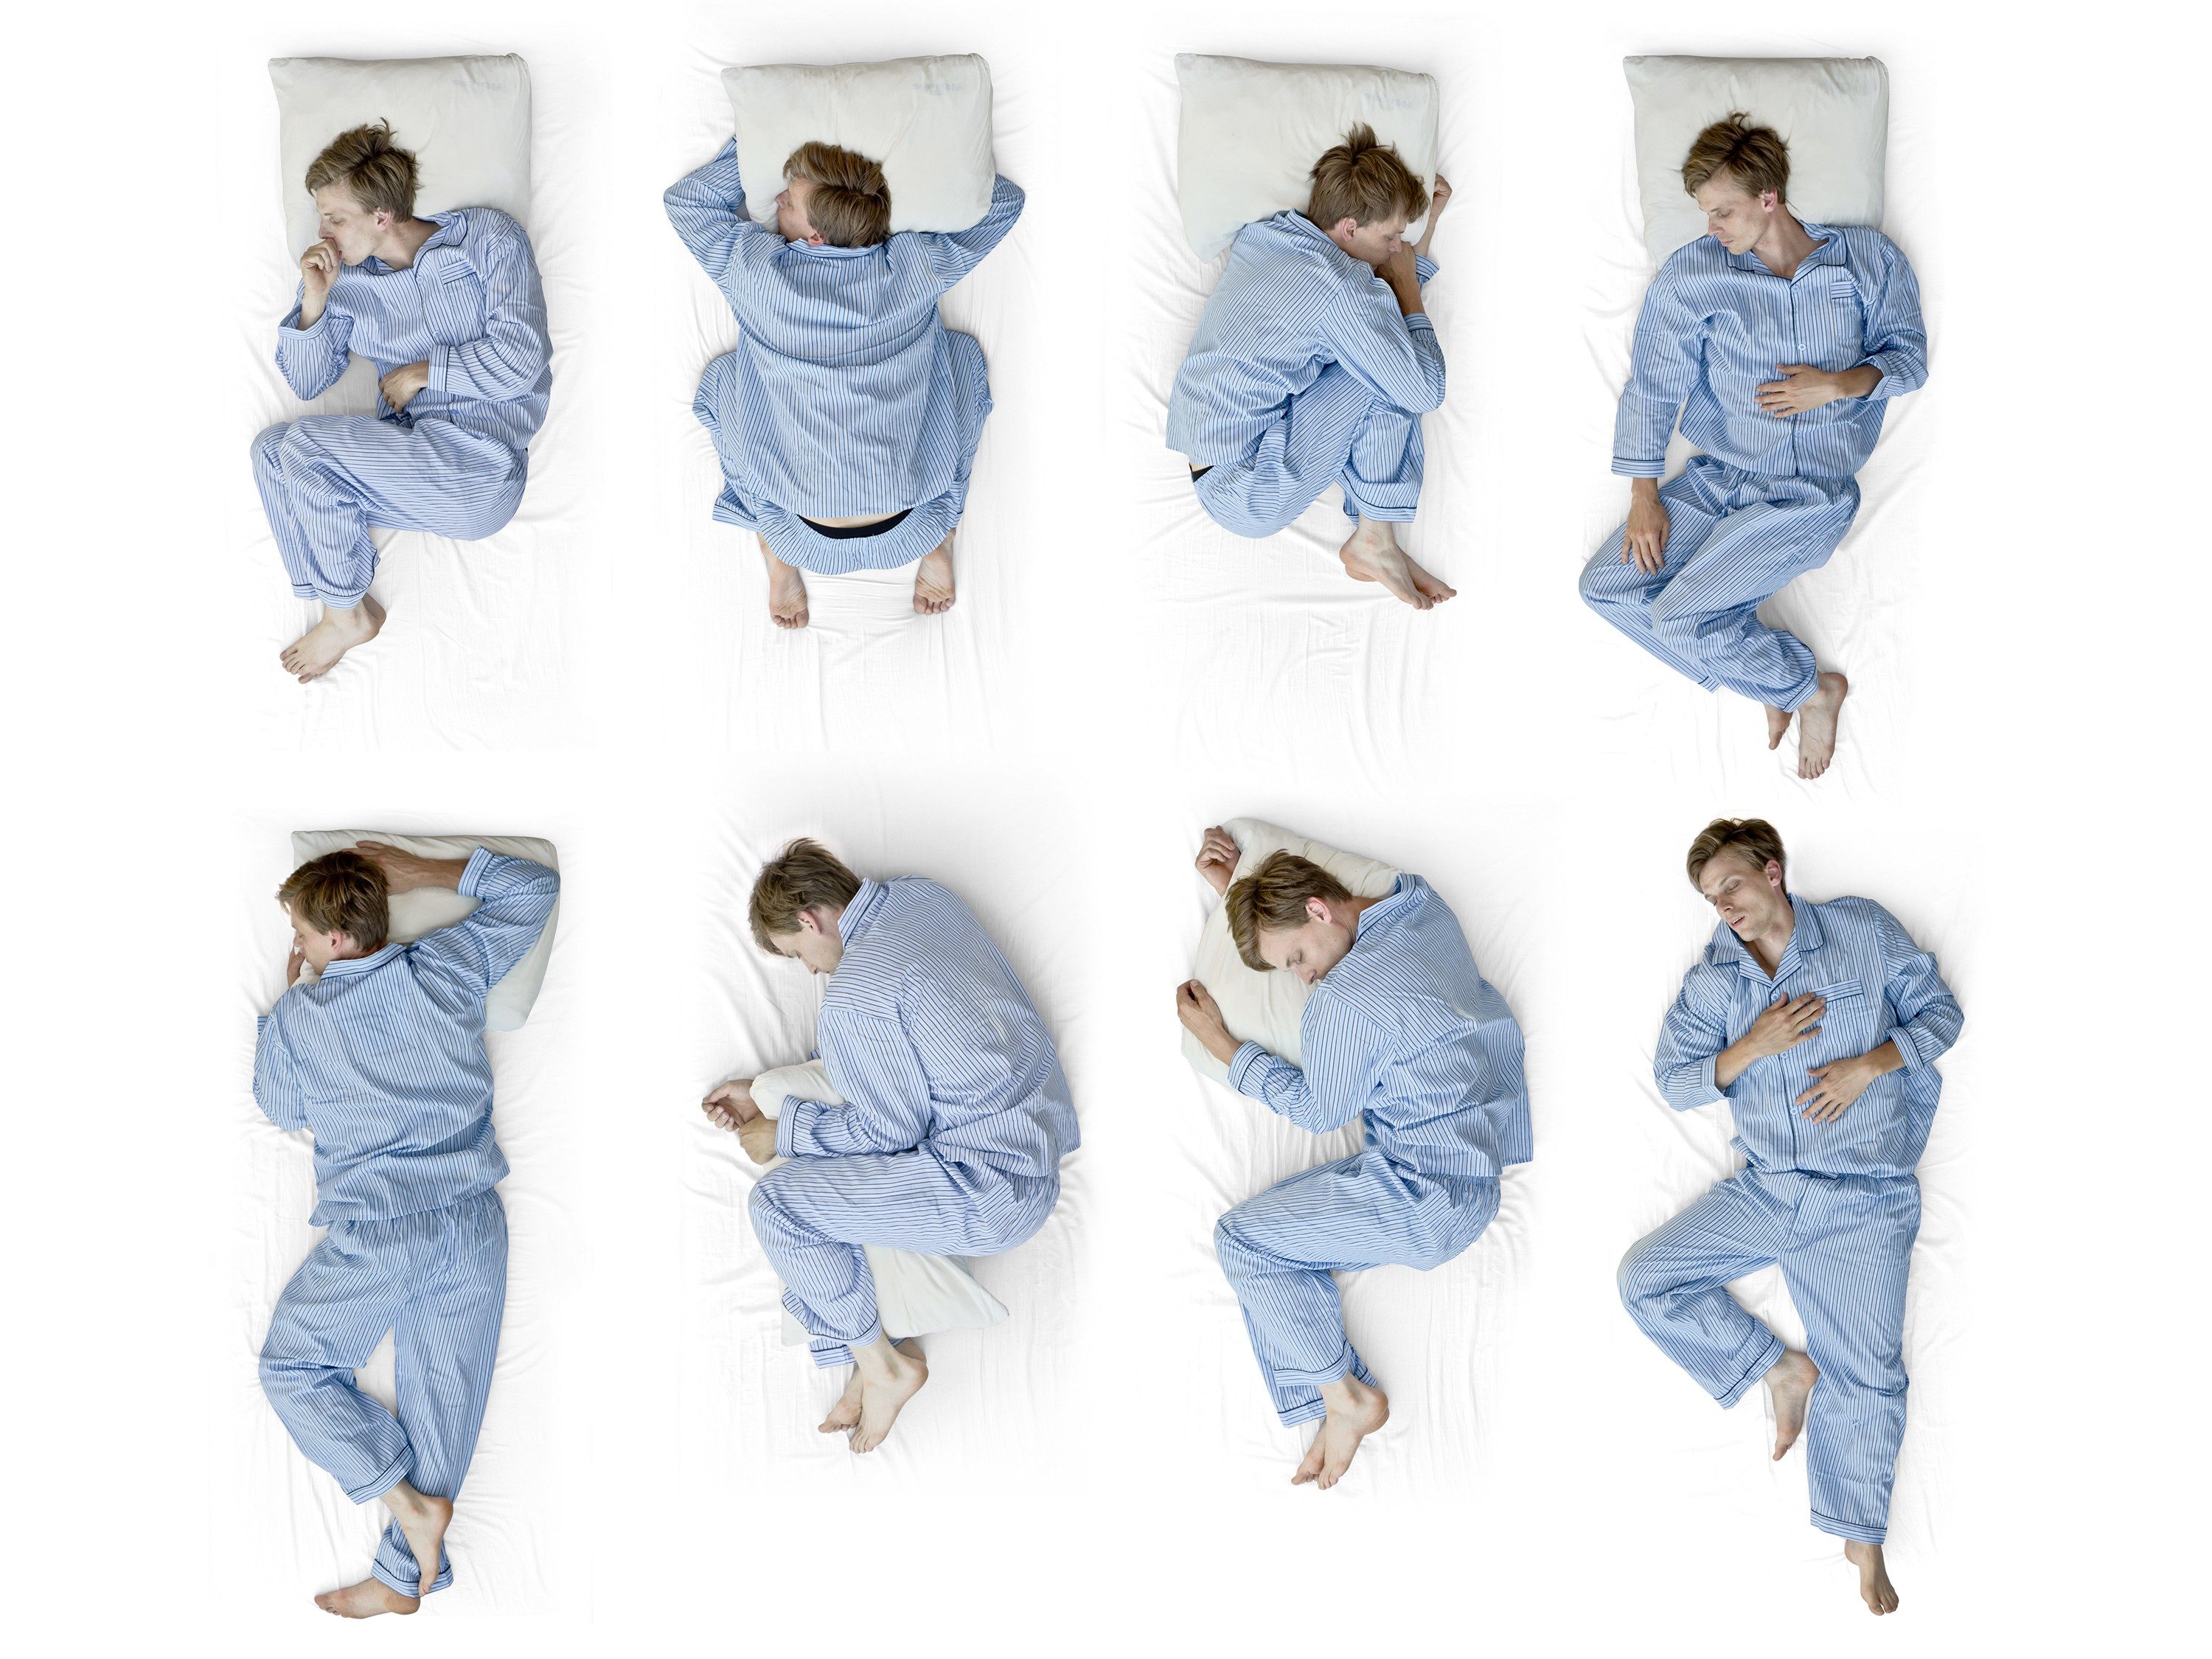 1. Change Sleep Positions